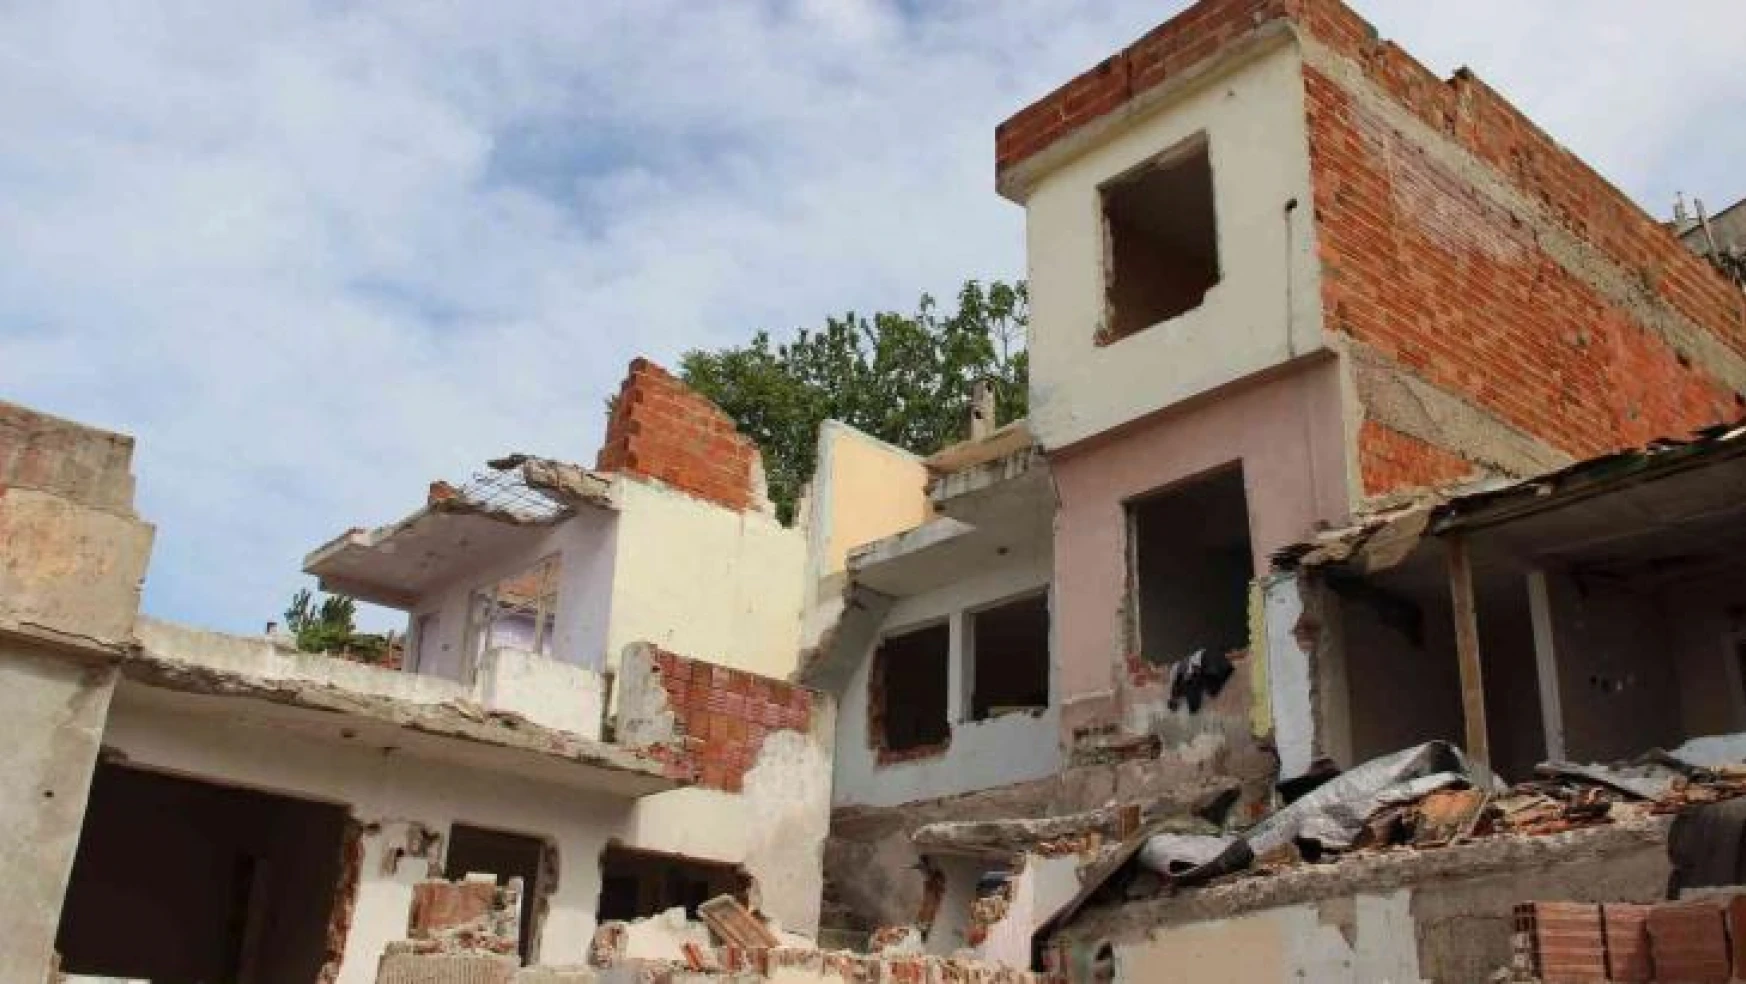 Ne savaş ne deprem, bu evlere piyango vurdu